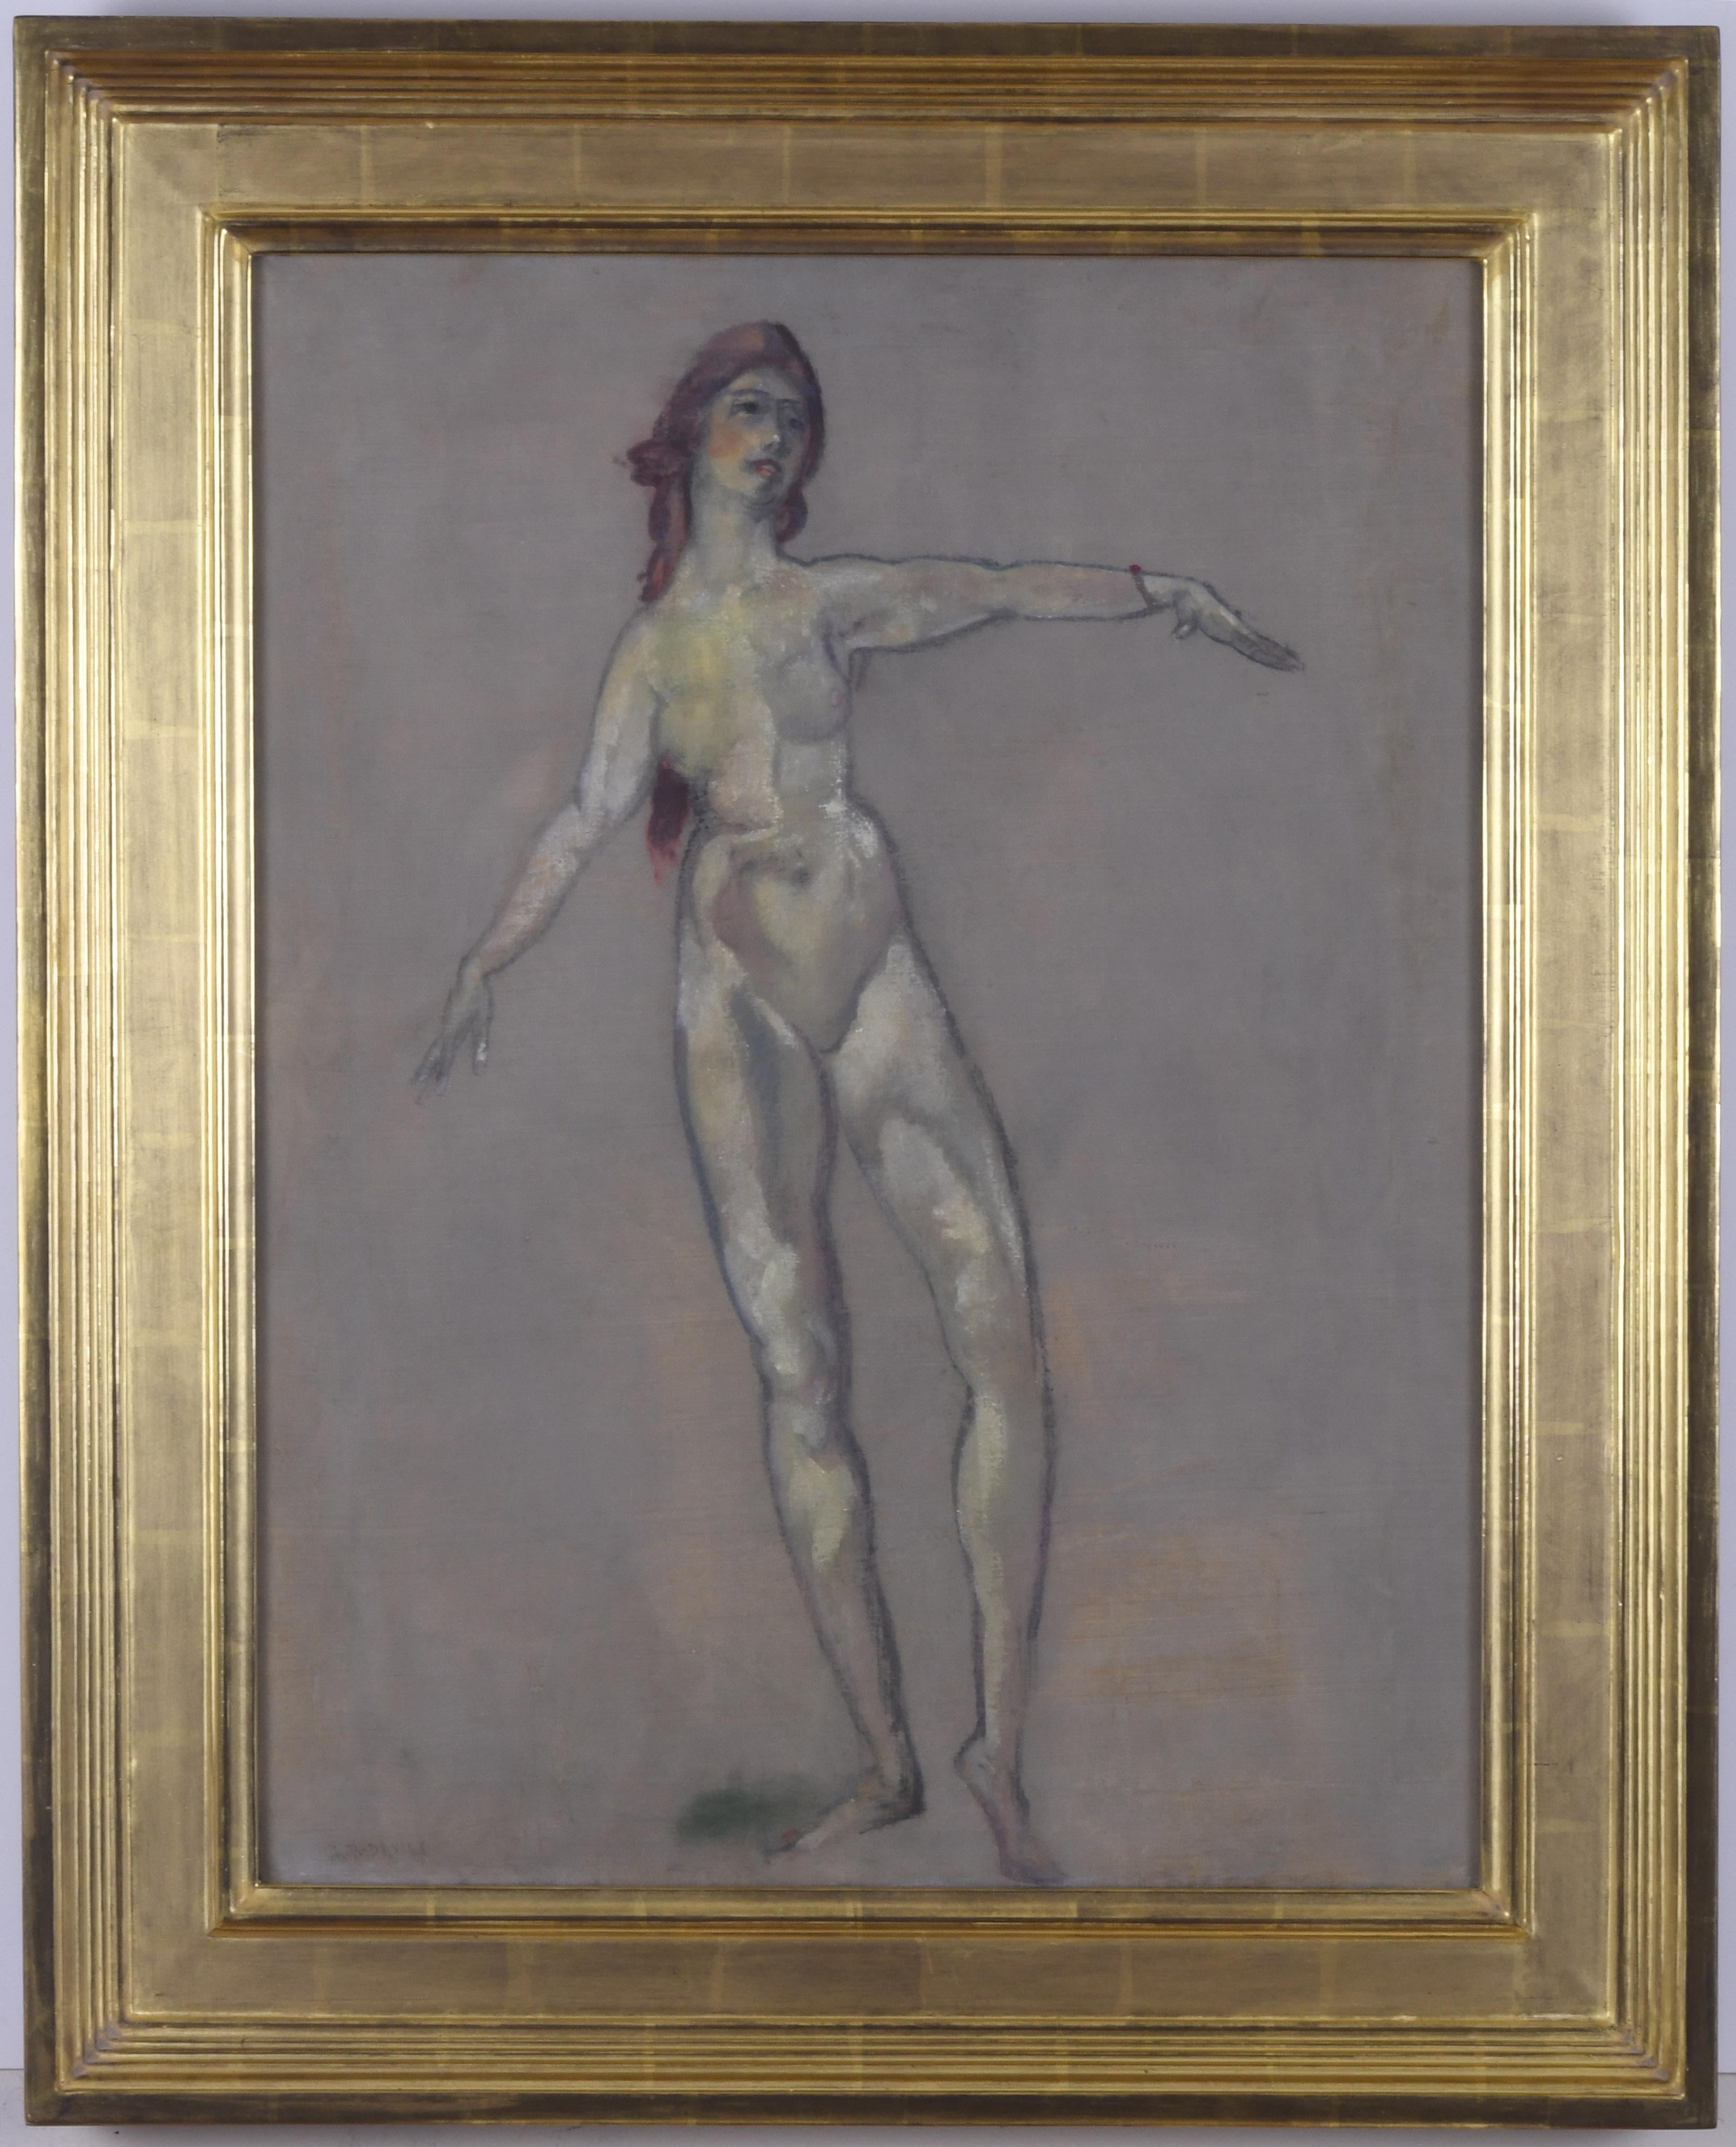 Stehender weiblicher Akt – Painting von Arthur Bowen Davies